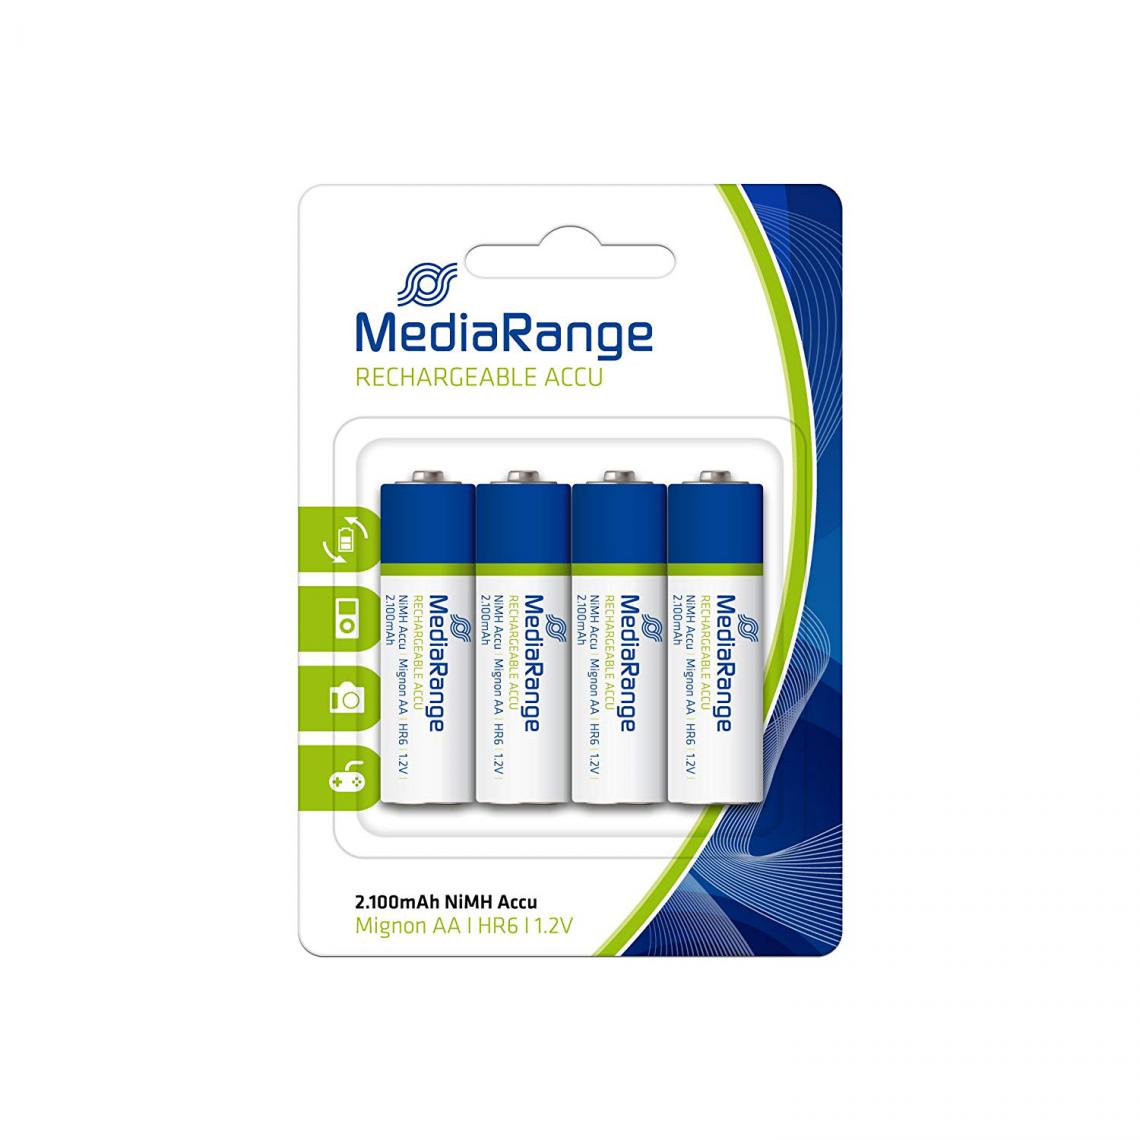 Mediarange - Pack de 4 piles rechargeable Mediarange NiMH Micro AAA HR06 1.2V - Piles spécifiques